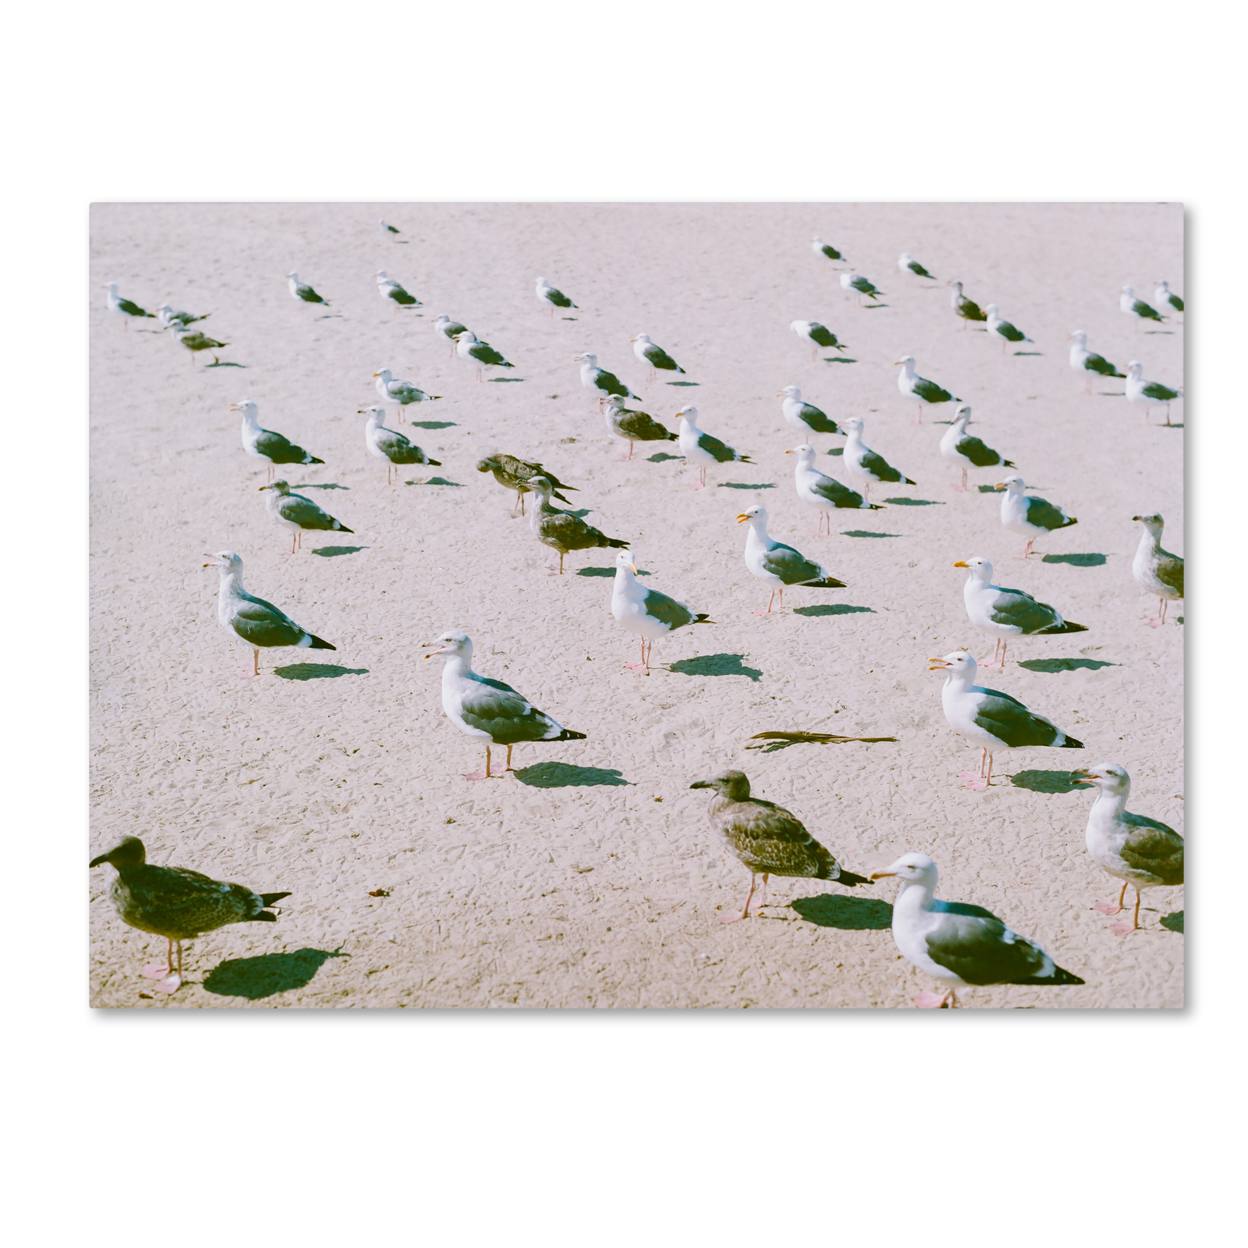 Ariane Moshayedi 'Seagulls At The Beach' Canvas Wall Art 35 X 47 Inches